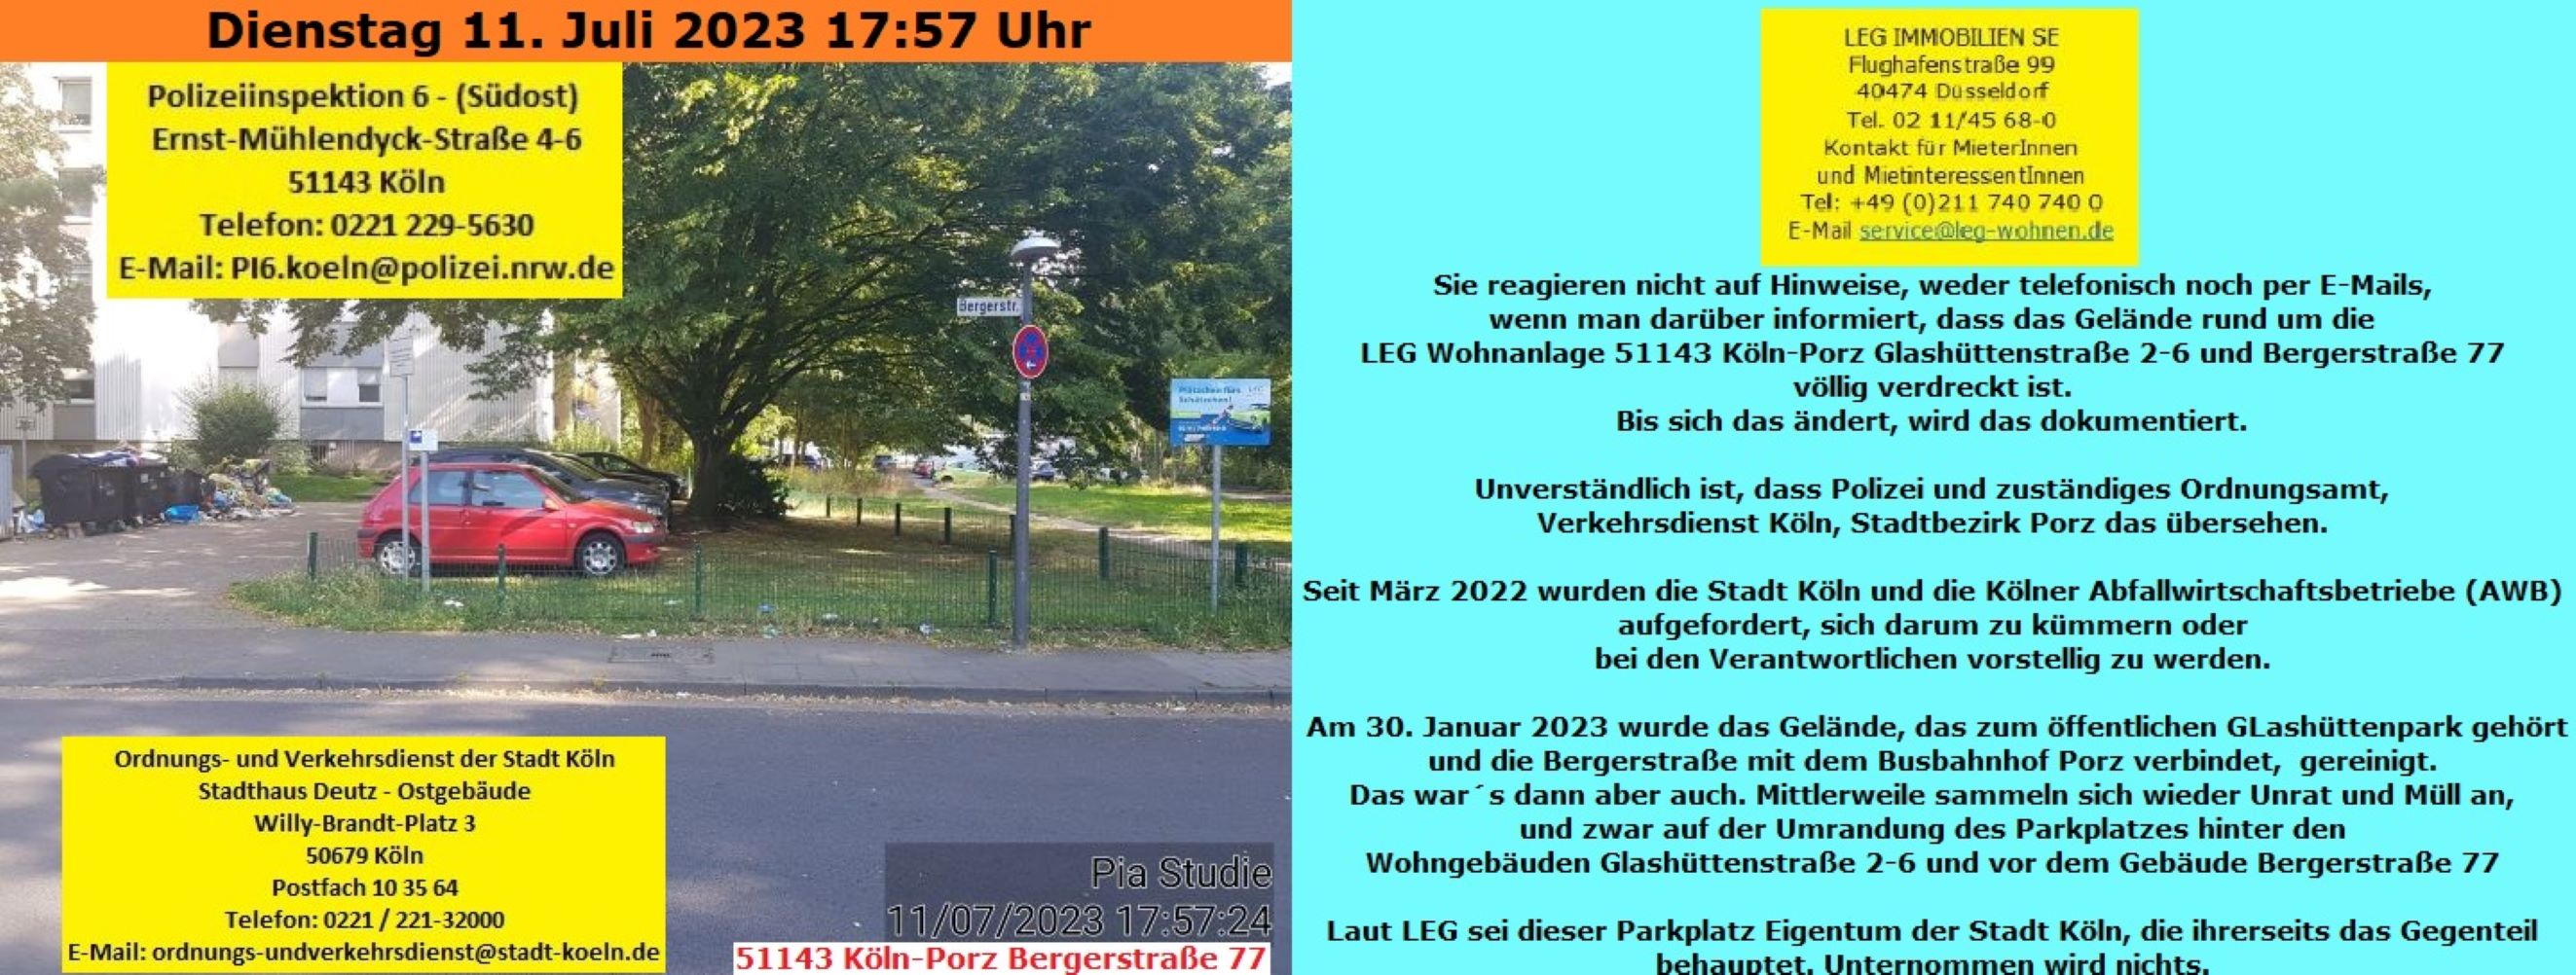 51143 Köln-Porz Glashüttenstraße 2-6 und Bergerstraße 77 
Details sind im Foto beschrieben.